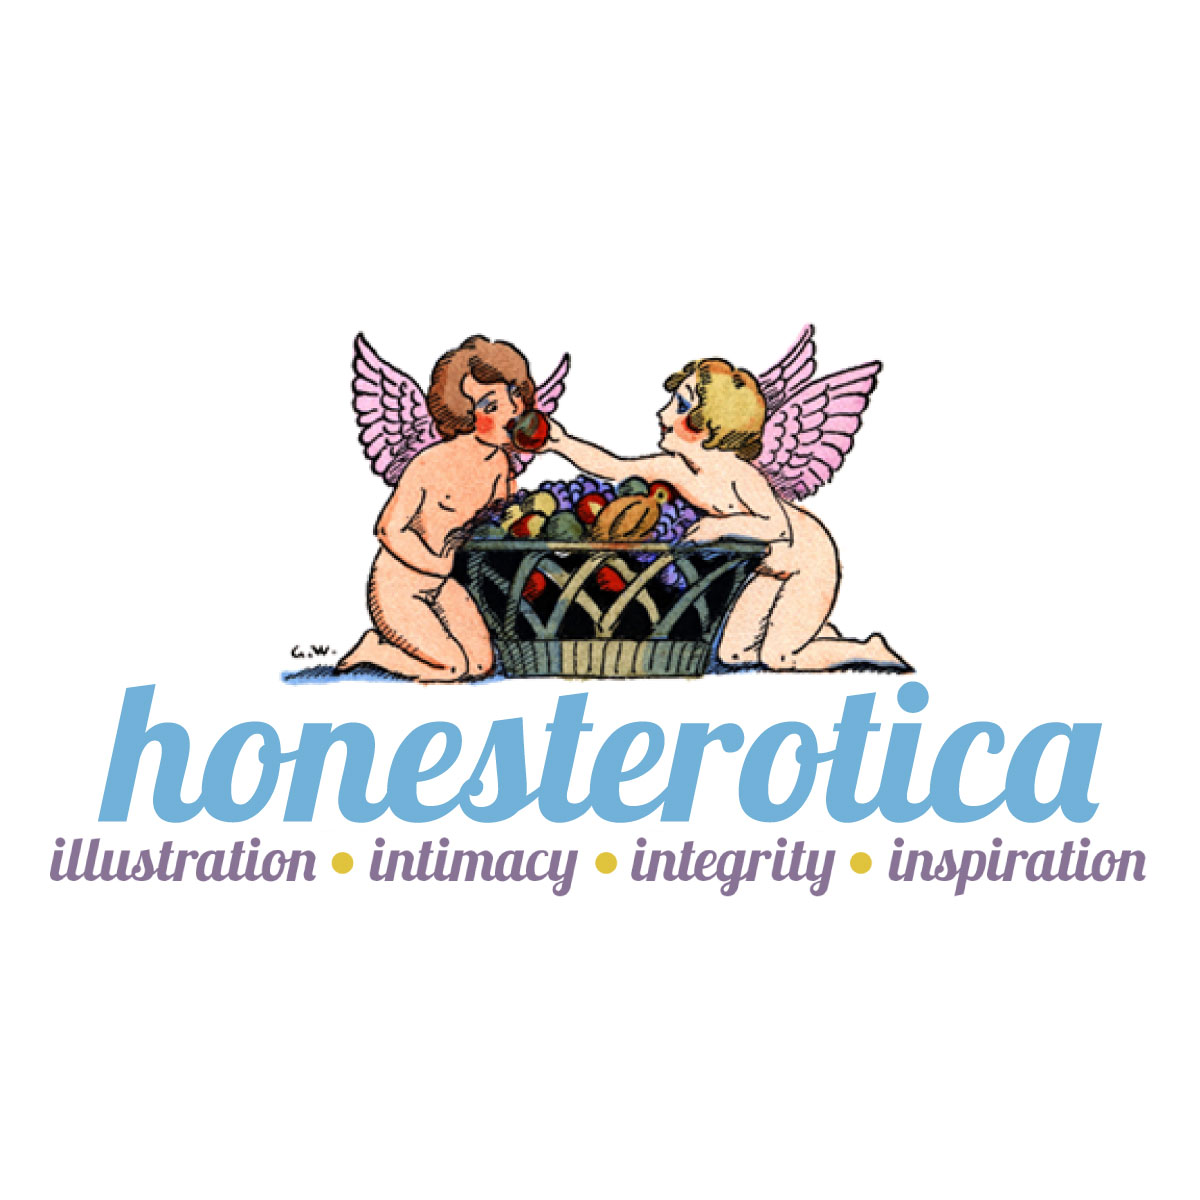 honesterotica.com